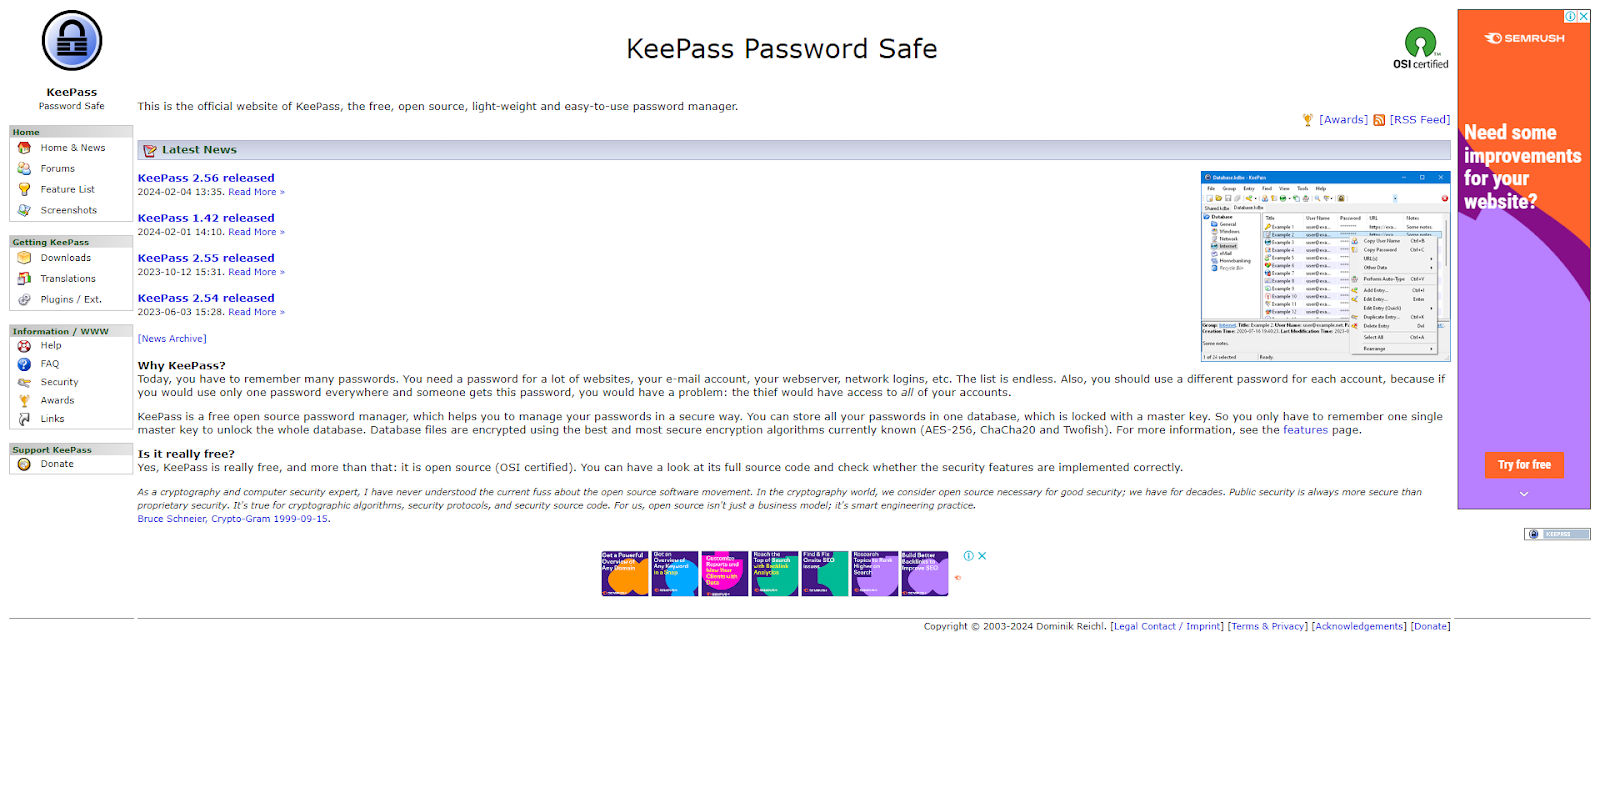 A screenshot of KeePass' website